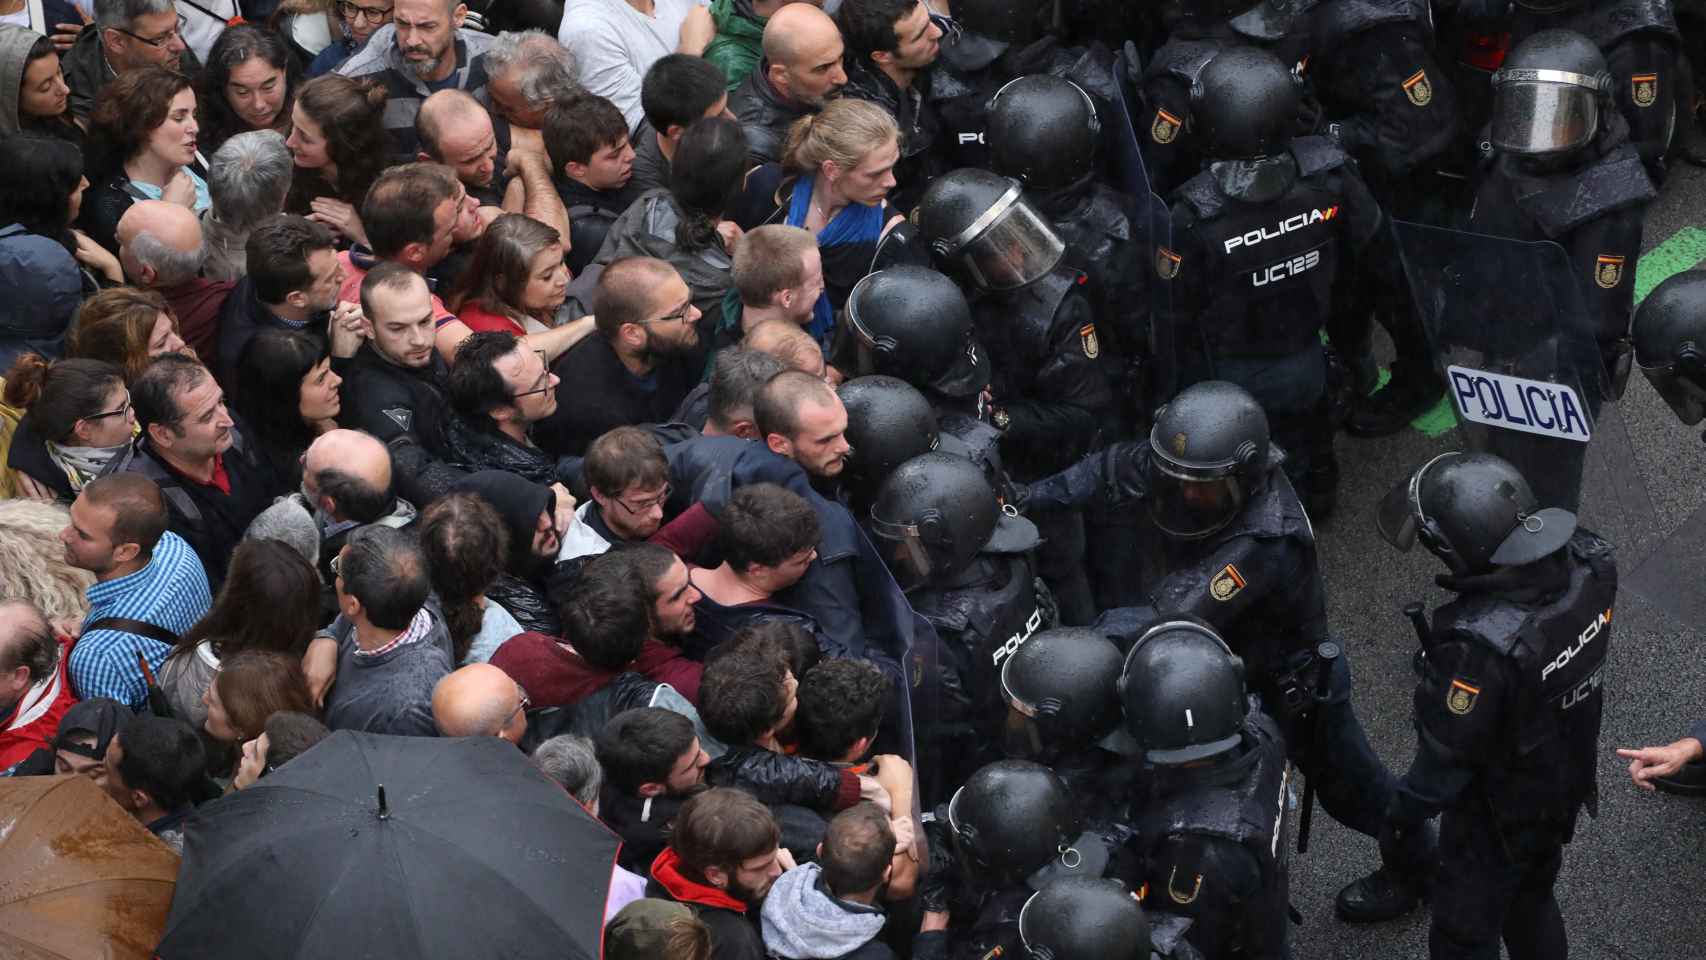 Una de las imágenes de cargas policiales aparecidas en la prensa europea